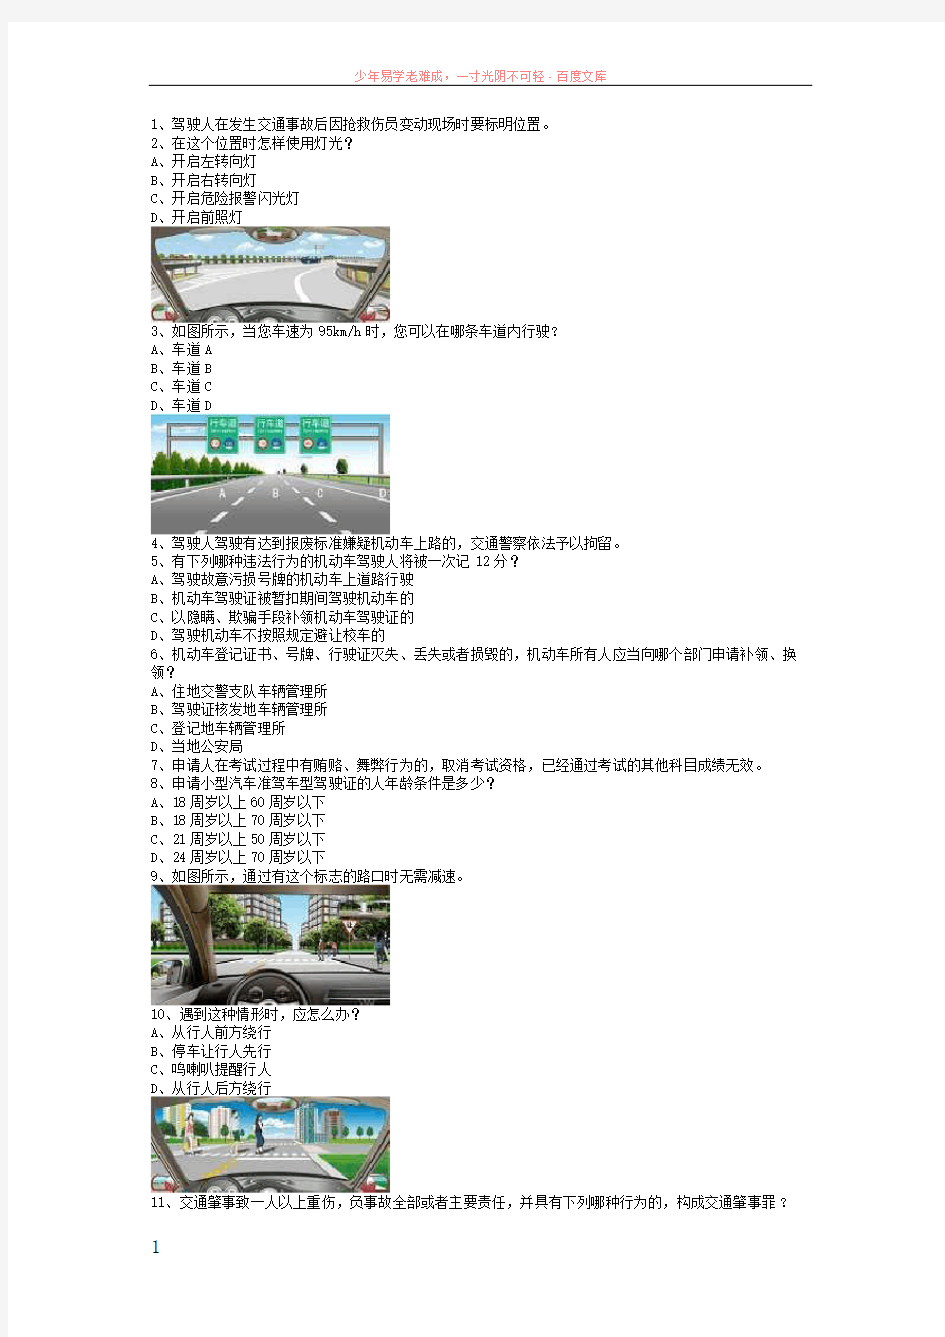 汉江县最新科目一完整货车资料